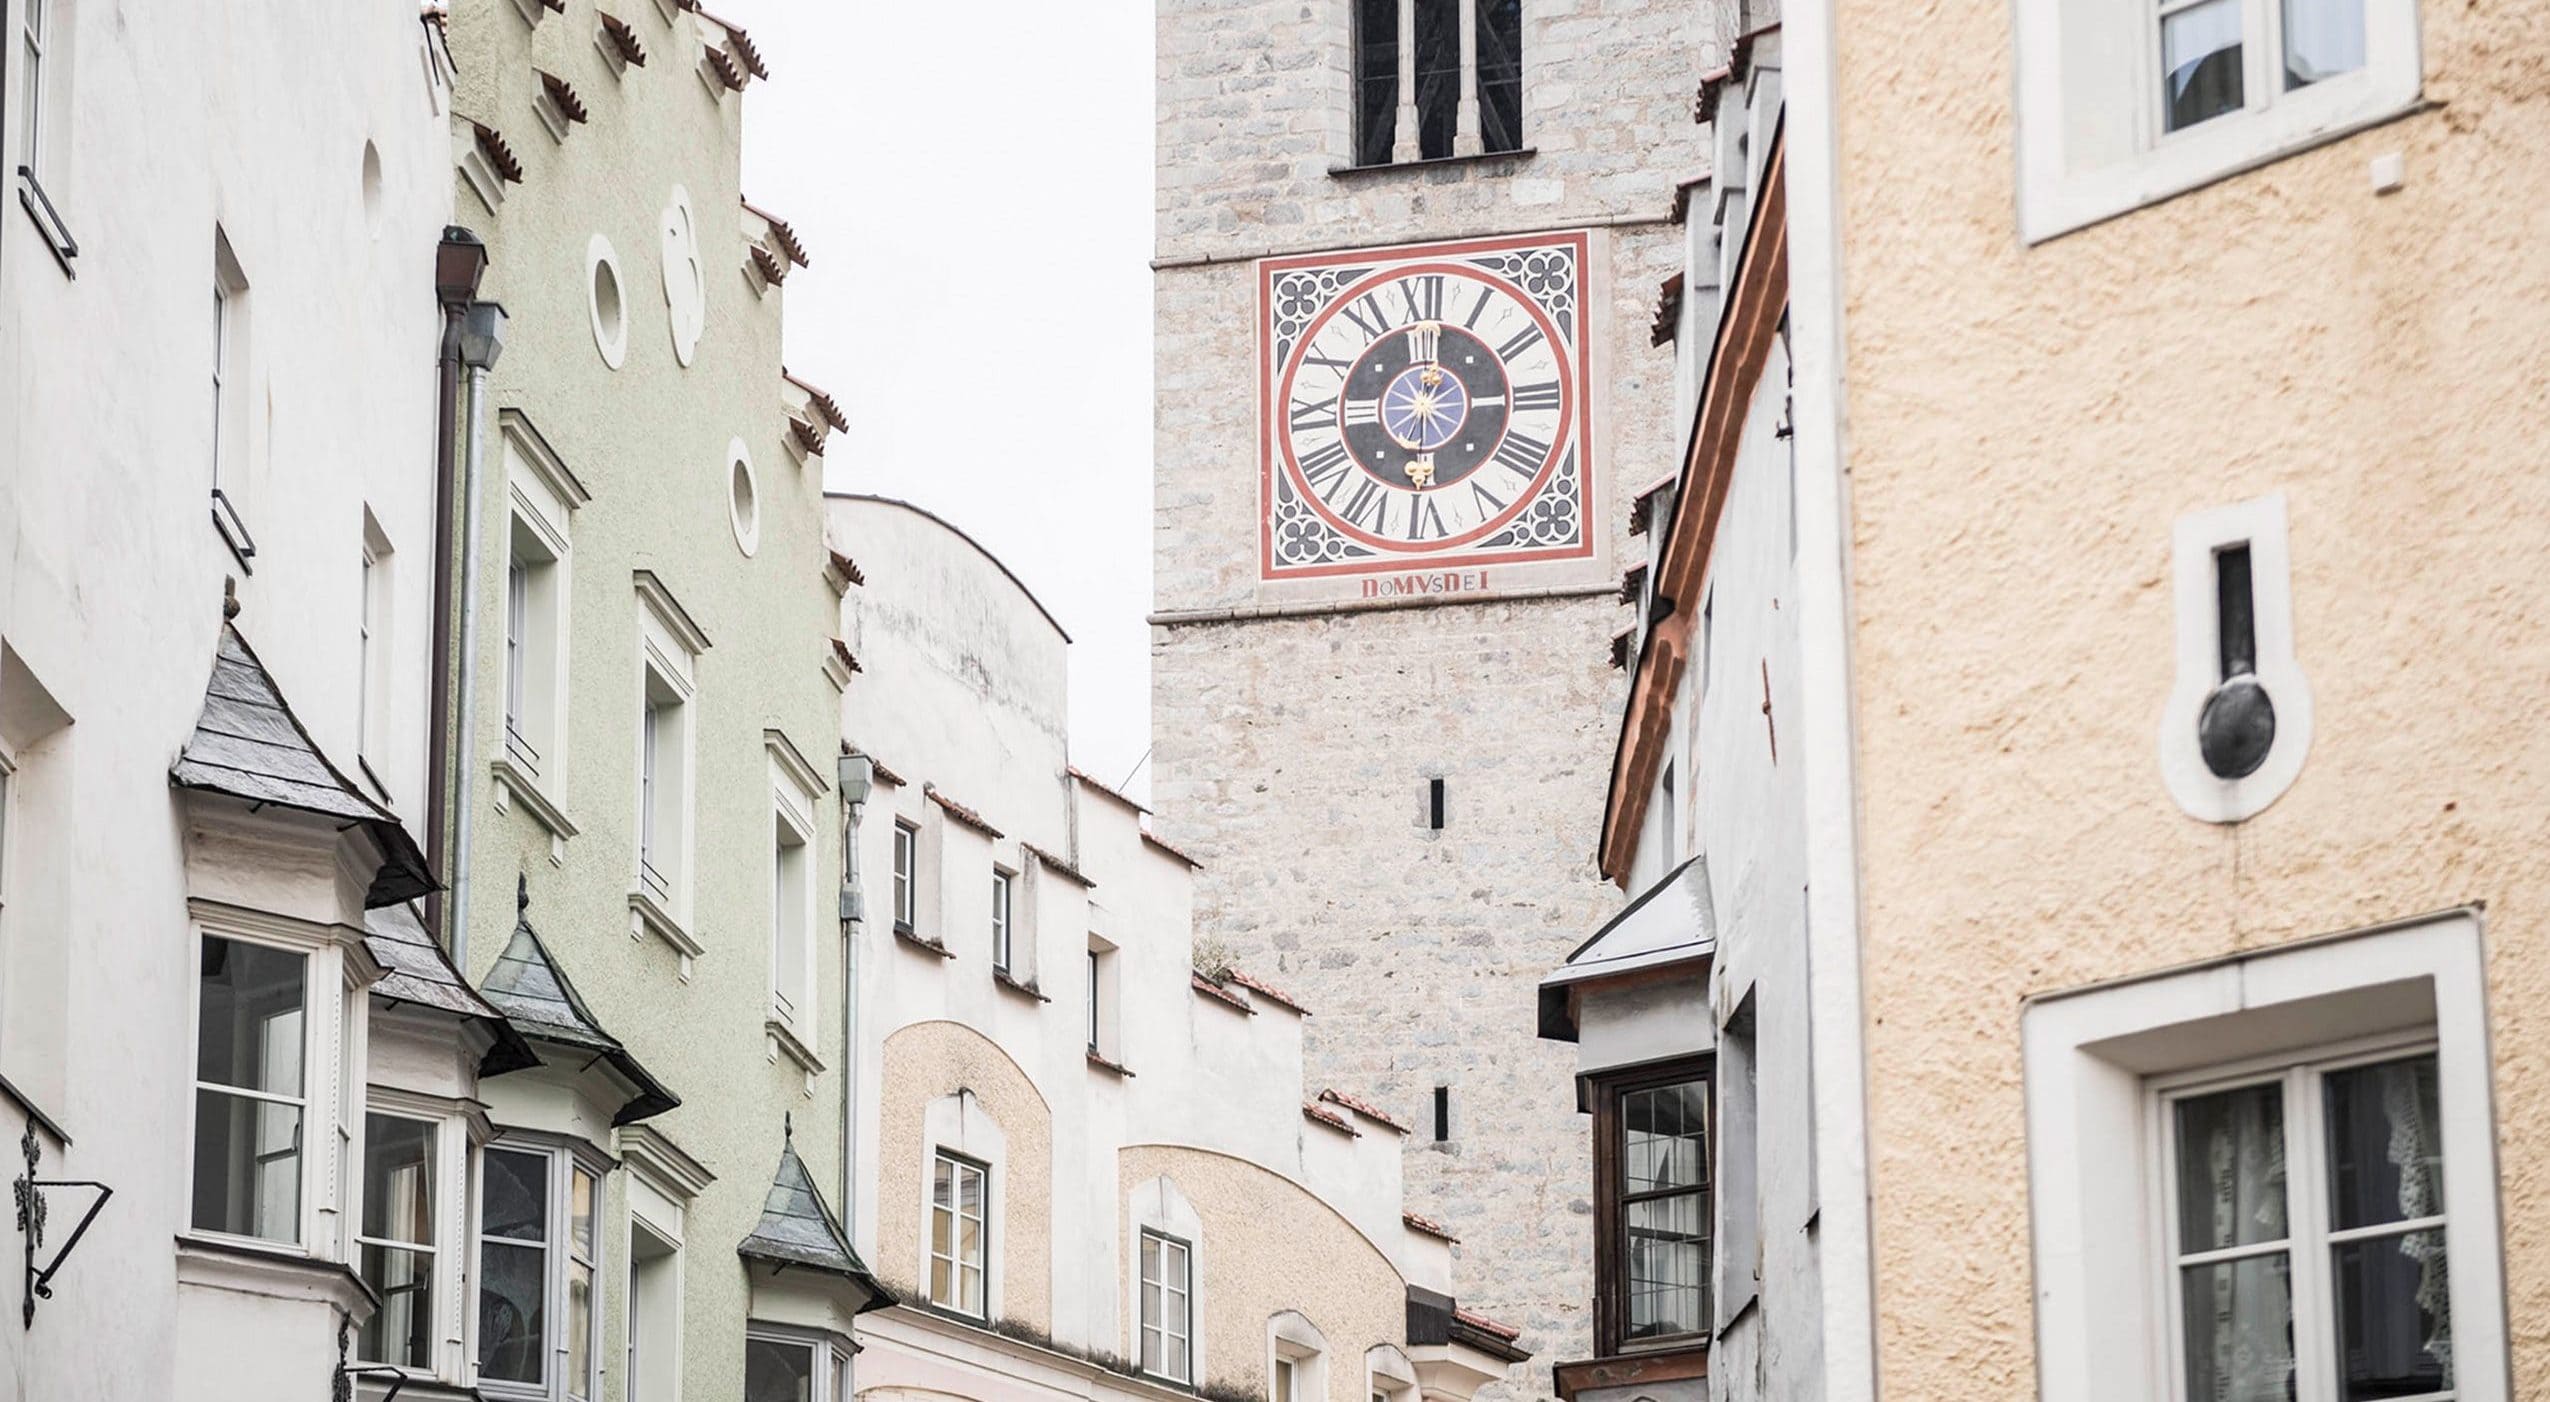 Hellweger & Runggaldier | Wirtschaftsprüfer und Steuerberater in Brixen